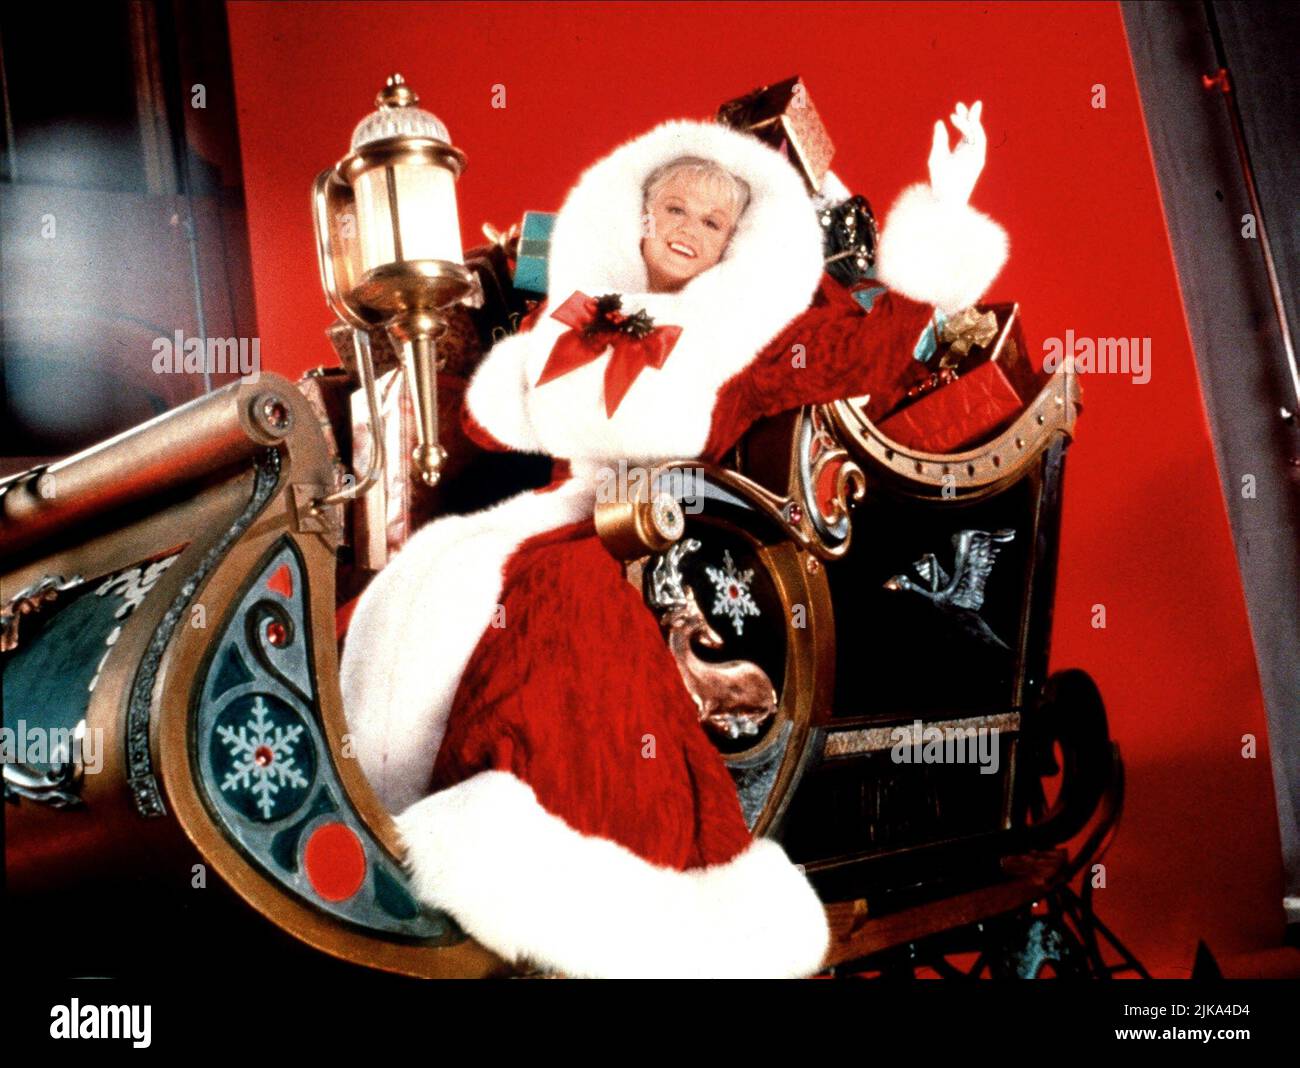 Angela Lansbury Film: Mrs. Santa Claus (TV-Film) Charaktere: Mrs. Santa Claus USA 1996, Regie: Terry Hughes 08. Dezember 1996 **WARNUNG** Dieses Foto ist nur für redaktionelle Zwecke bestimmt und unterliegt dem Copyright von MARKENZEICHEN ENTERTAINMENT und/oder des Fotografen, die von der Film- oder Produktionsfirma beauftragt wurden.Es kann nur von Publikationen im Zusammenhang mit der Bewerbung des oben genannten Films reproduziert werden. Eine obligatorische Gutschrift für DIE „HALLMARK ENTERTAINMENT“ ist erforderlich. Der Fotograf sollte auch bei Bekanntwerden des Fotos gutgeschrieben werden. Ohne schriftliche Genehmigung der Film Company kann keine kommerzielle Nutzung gewährt werden. Stockfoto